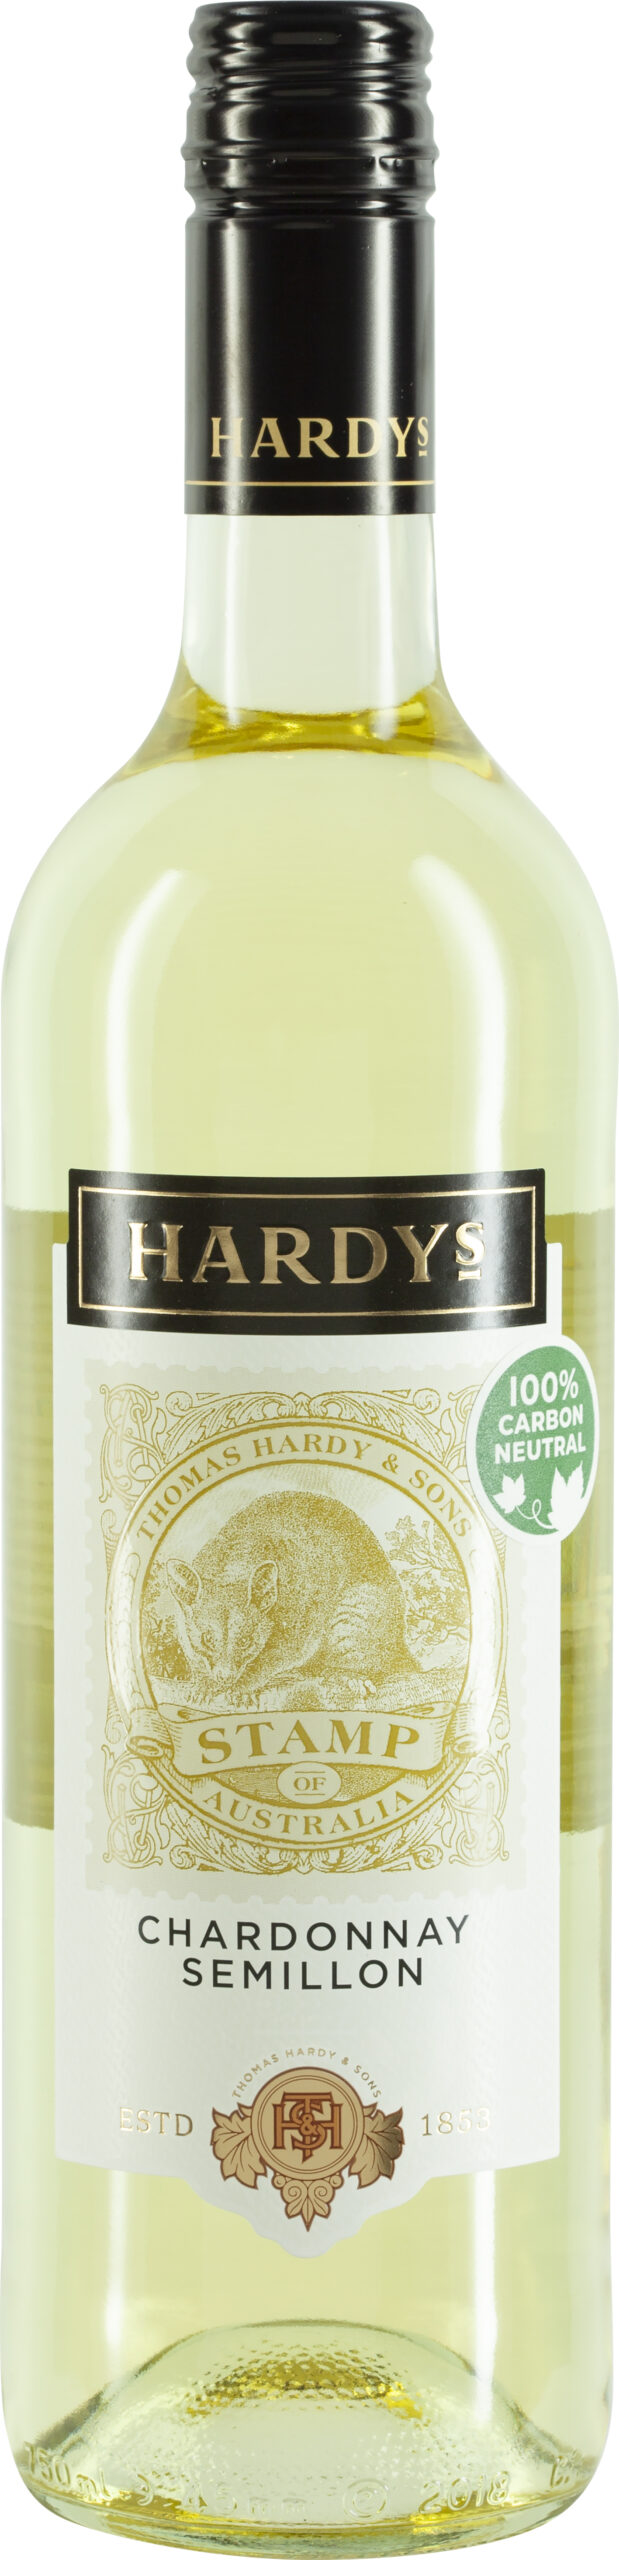 Hardys Stamp, Chardonnay Semillon South East Australia - Schenk Weine